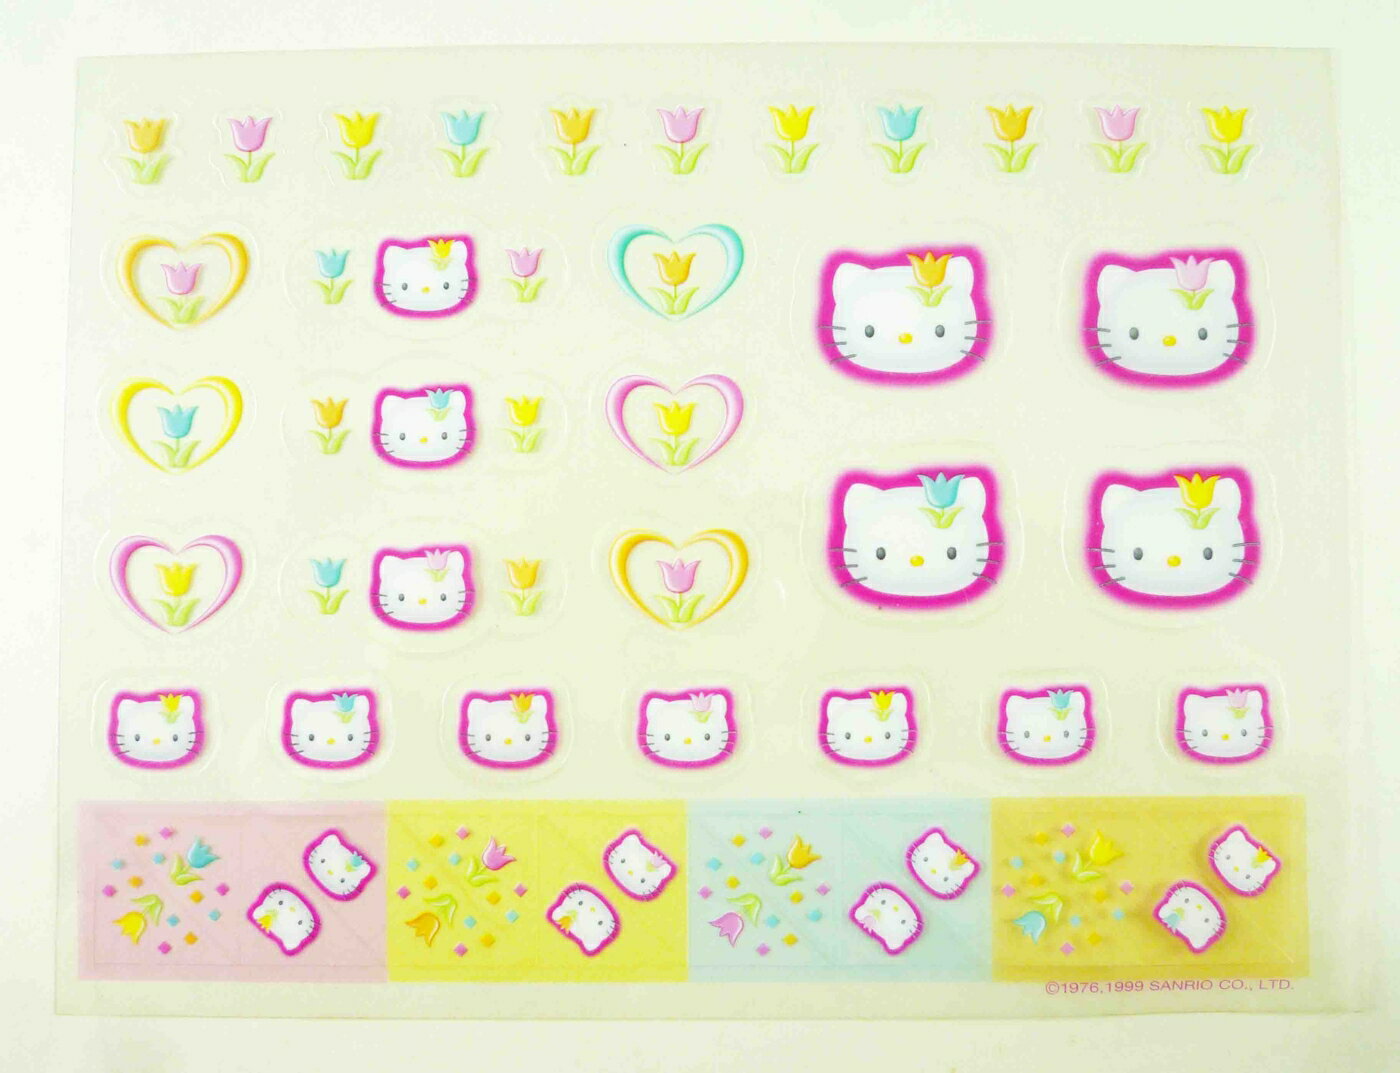 【震撼精品百貨】Hello Kitty 凱蒂貓 KITTY貼紙-透金香心 震撼日式精品百貨